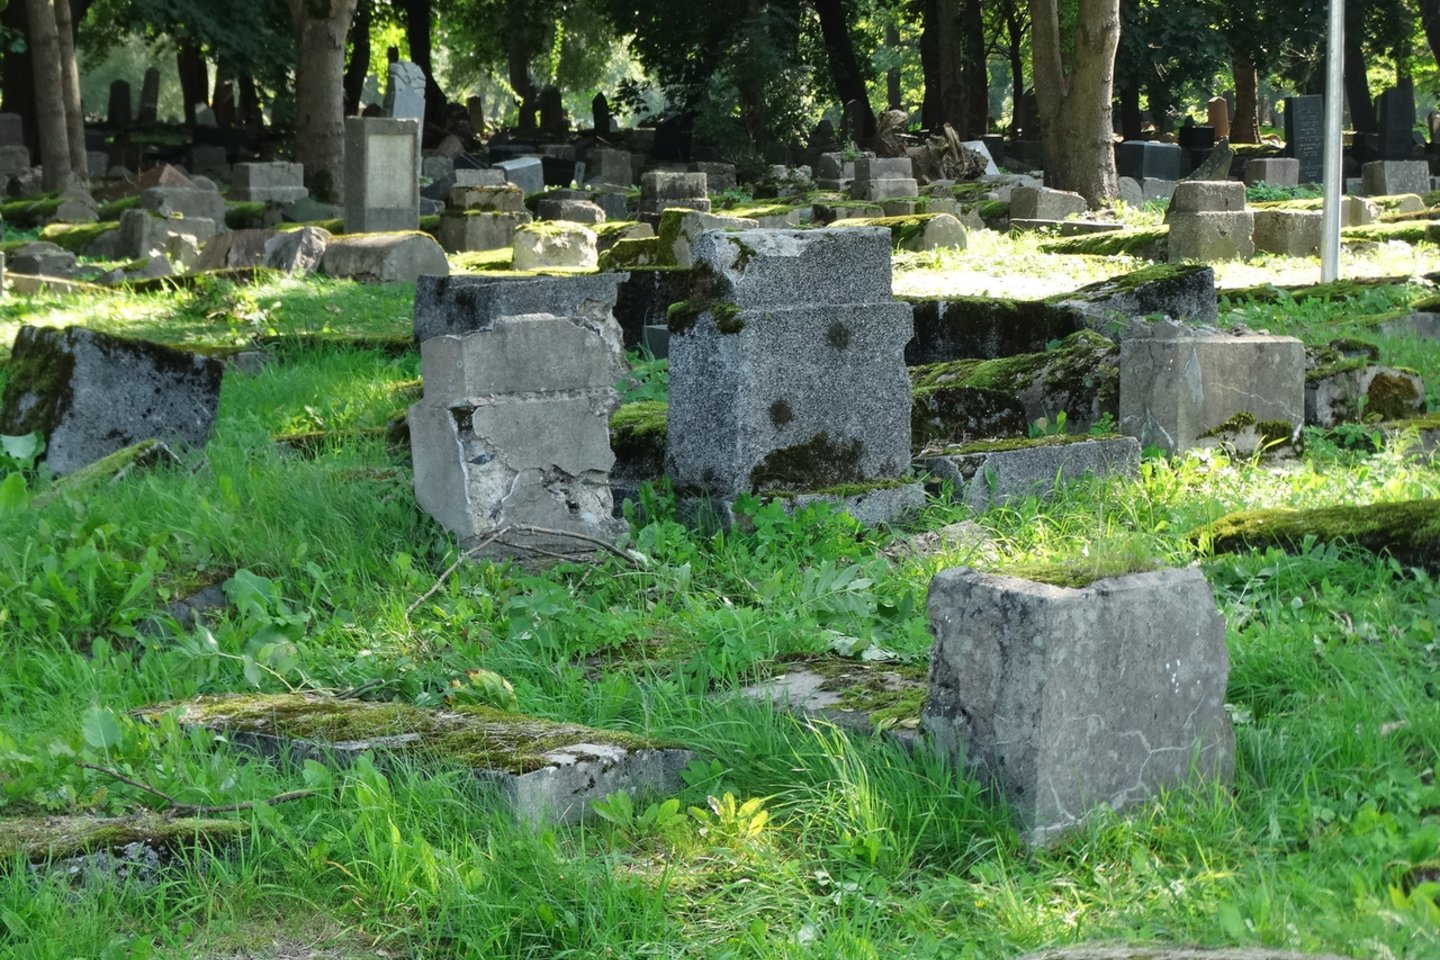  Dėl įvykio Radvilėnų kapinėse policijos pareigūnai pradėjo tyrimą. <br> A.Karaliūno nuotr.